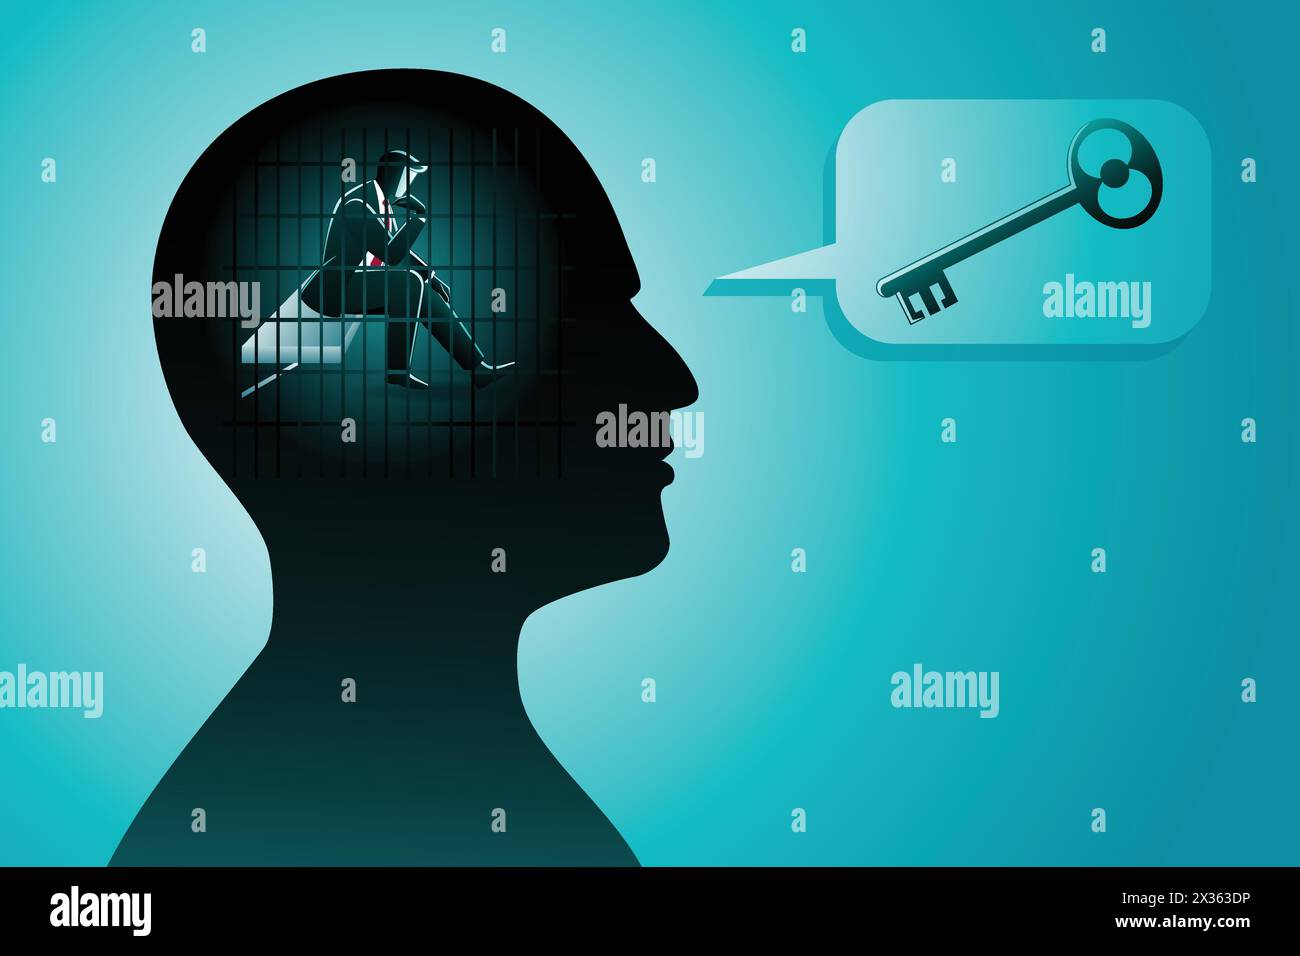 Illustrazione vettoriale di un uomo d'affari in testa umana che sta in prigione mentre pensa a una chiave, simbolo di risoluzione dei problemi Illustrazione Vettoriale